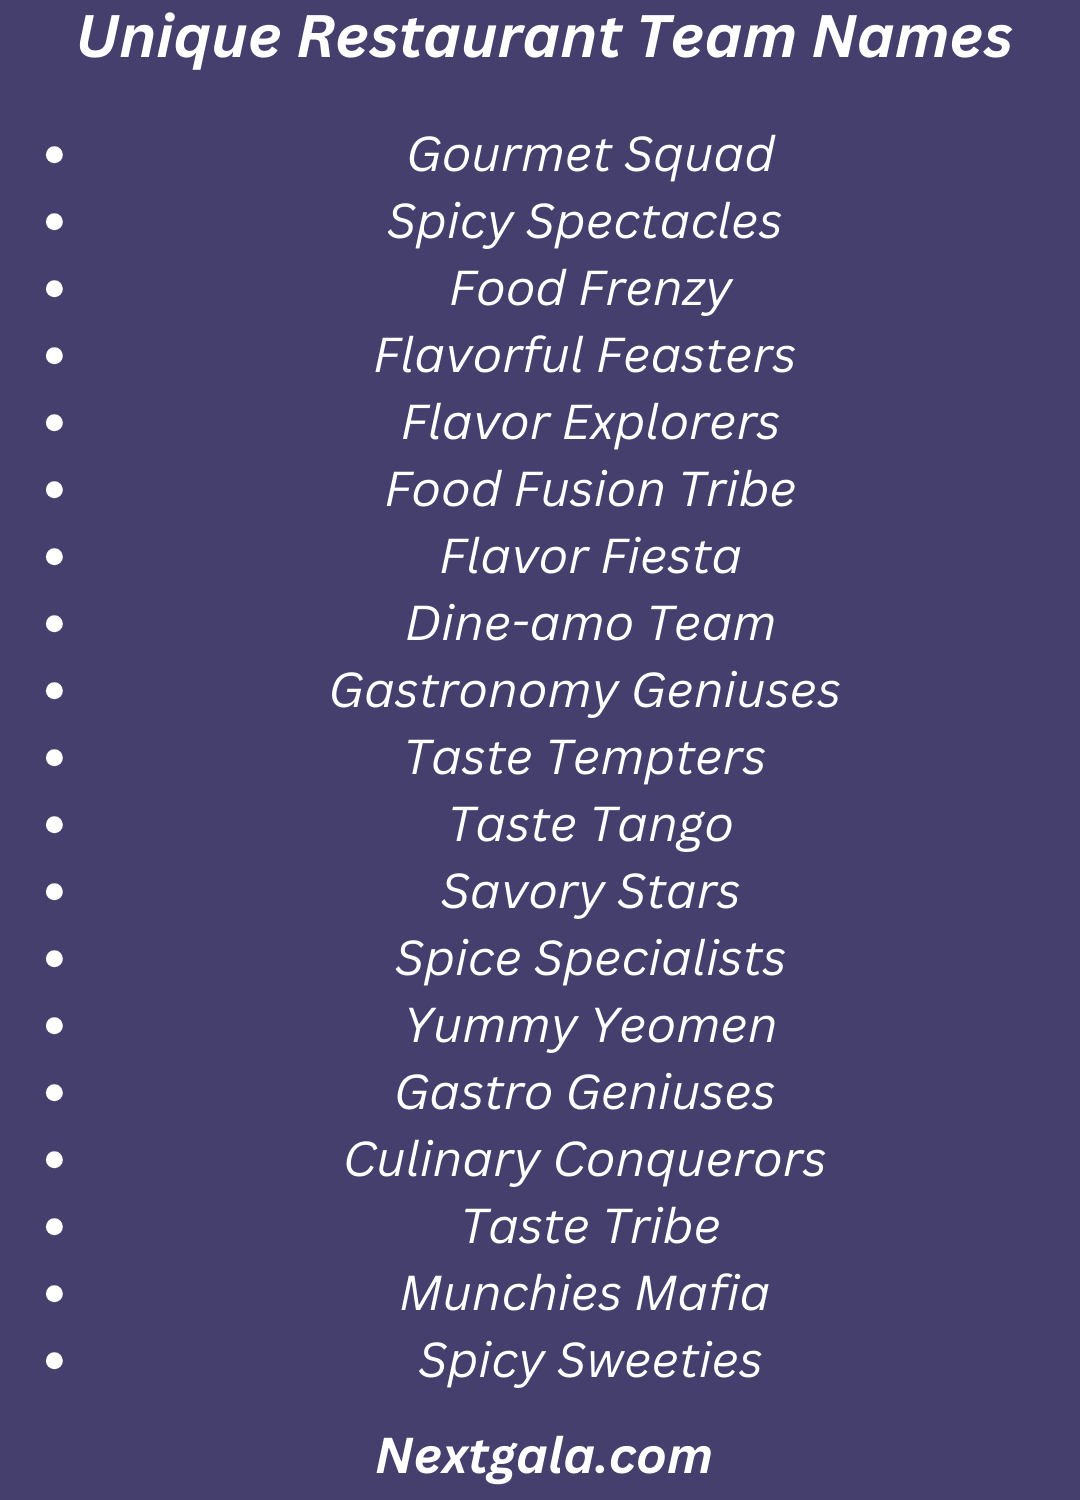 Restaurant Team Names